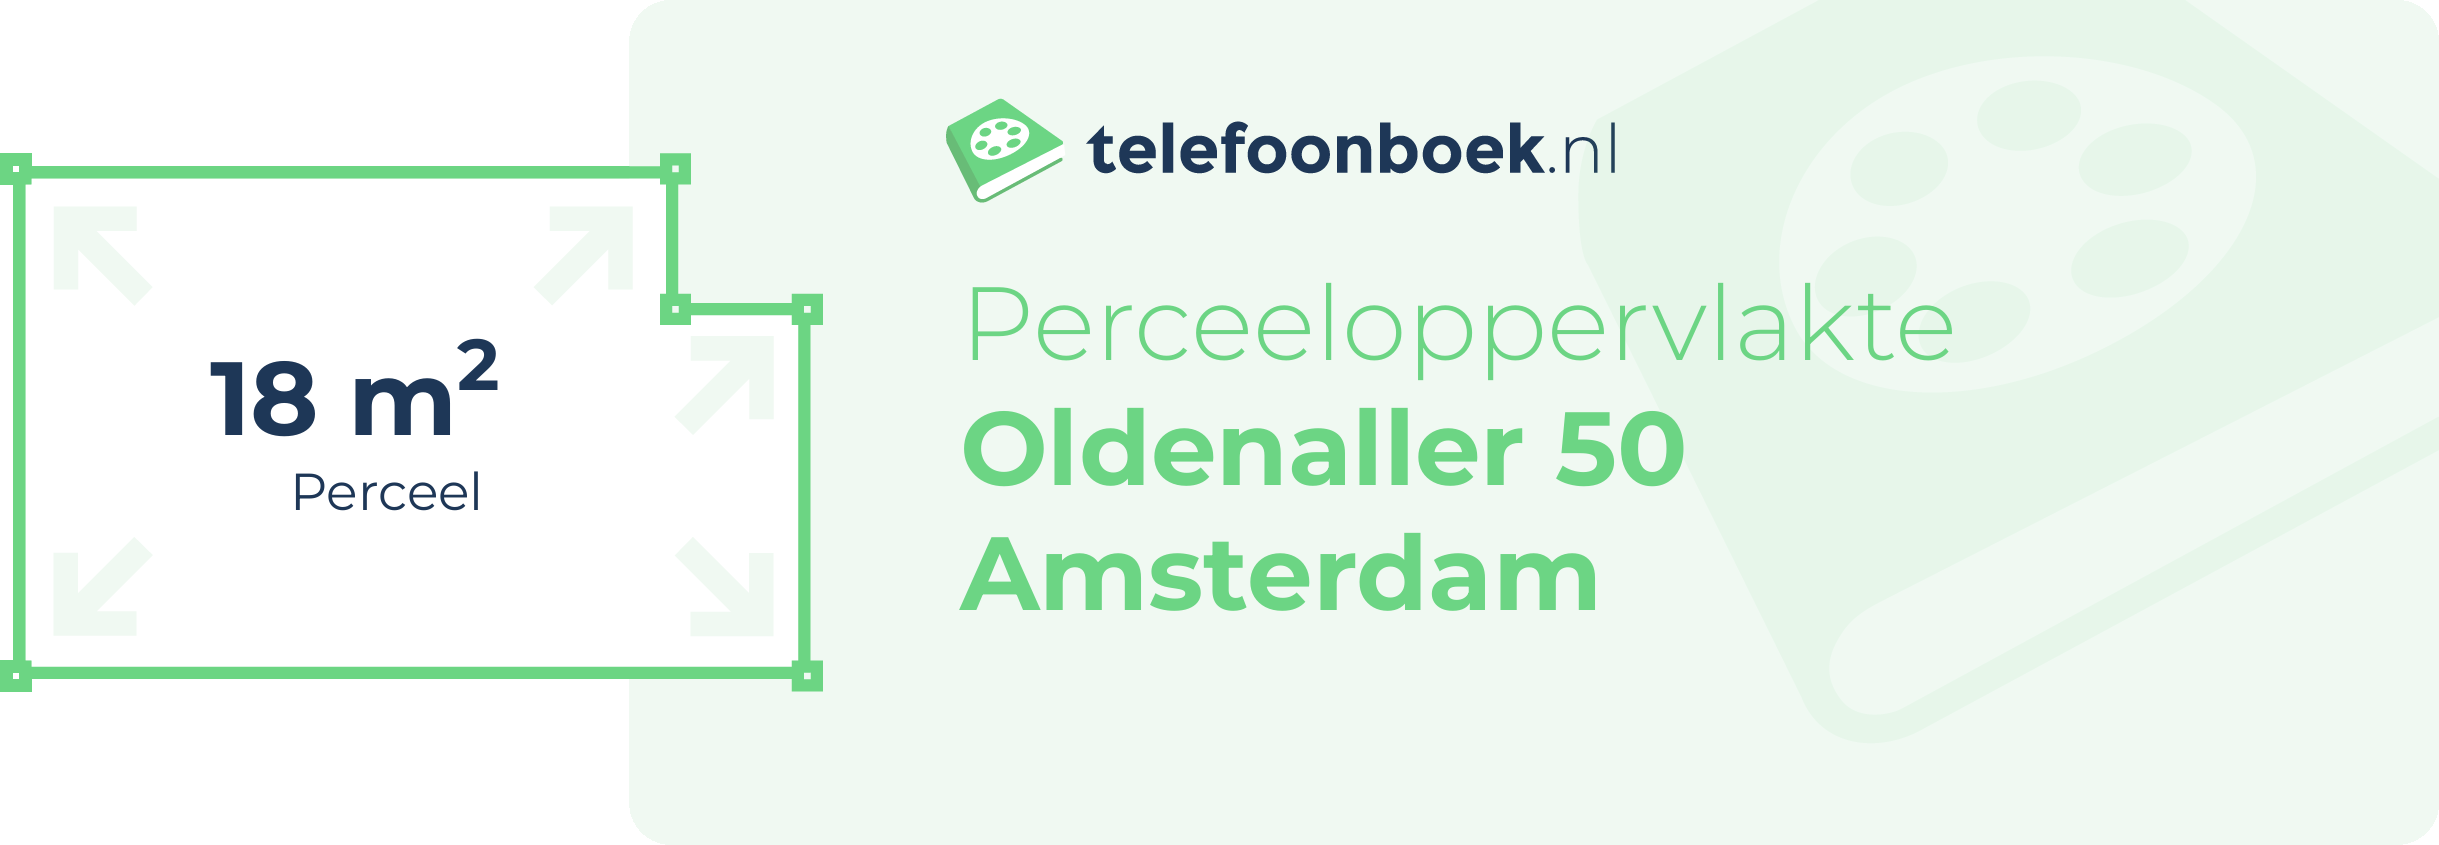 Perceeloppervlakte Oldenaller 50 Amsterdam